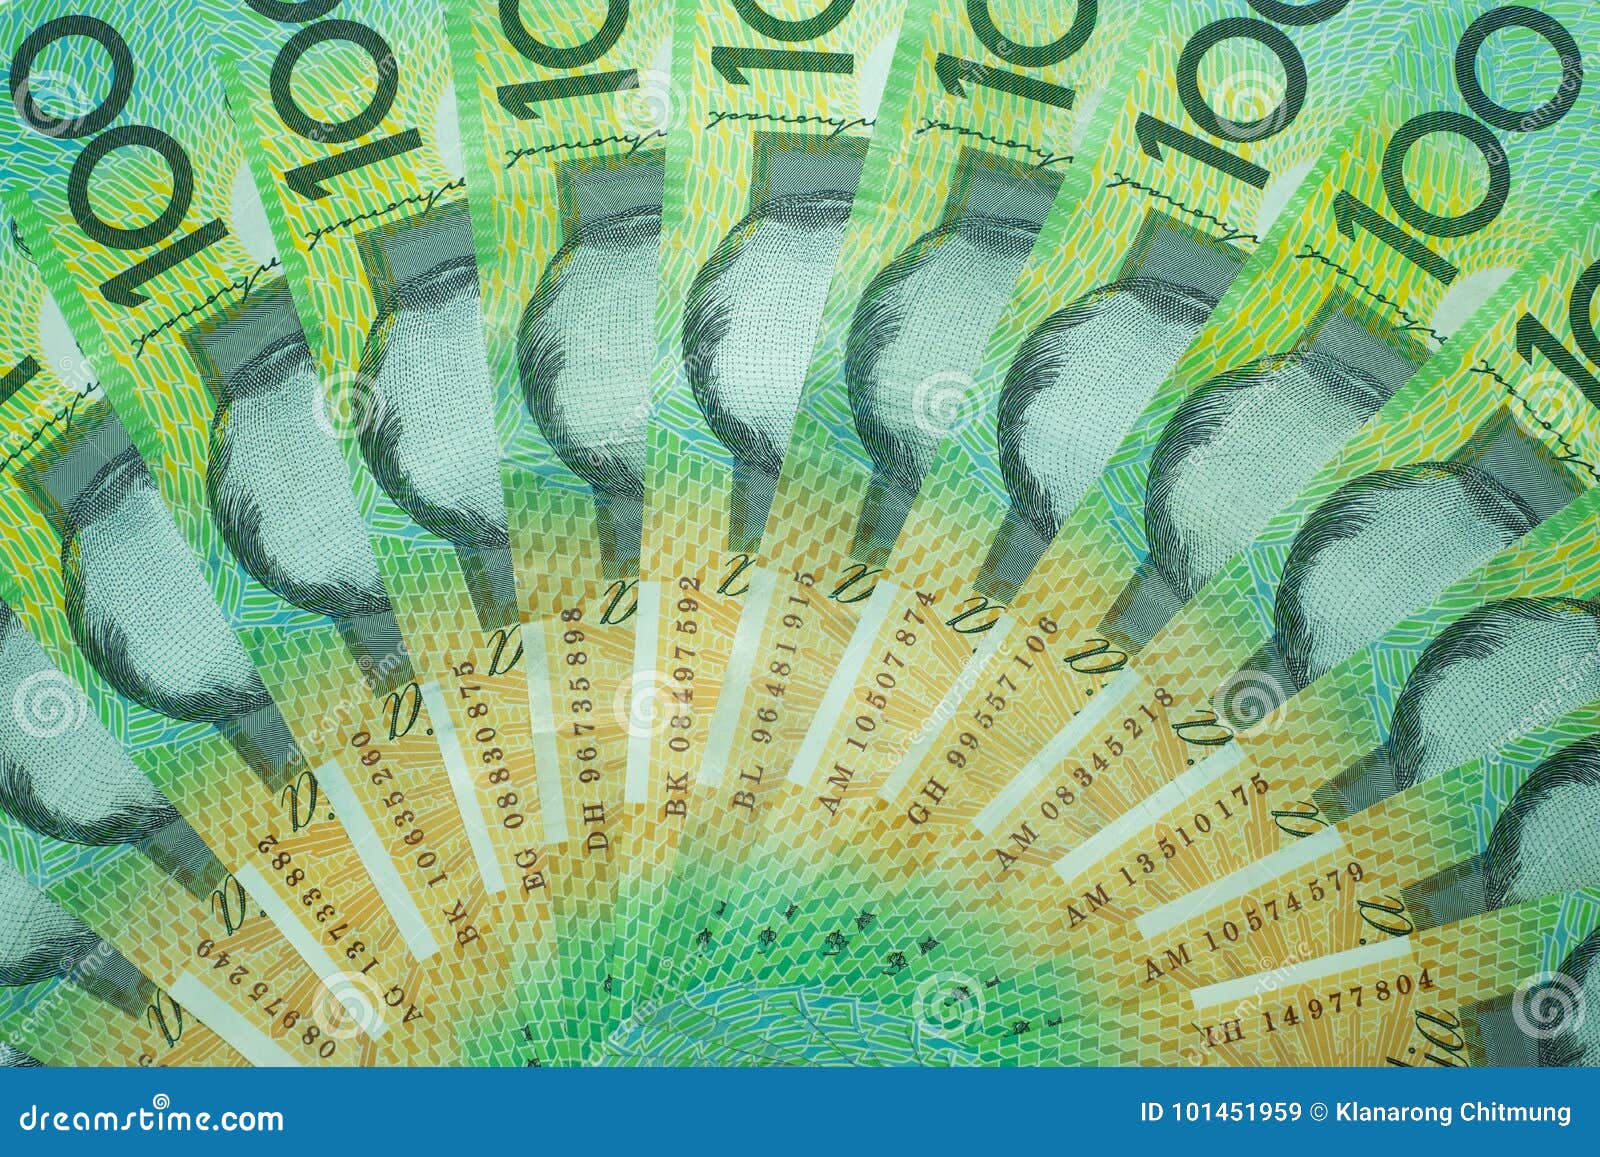 尴尬！澳大利亚新版50澳元纸币上出现拼写错误